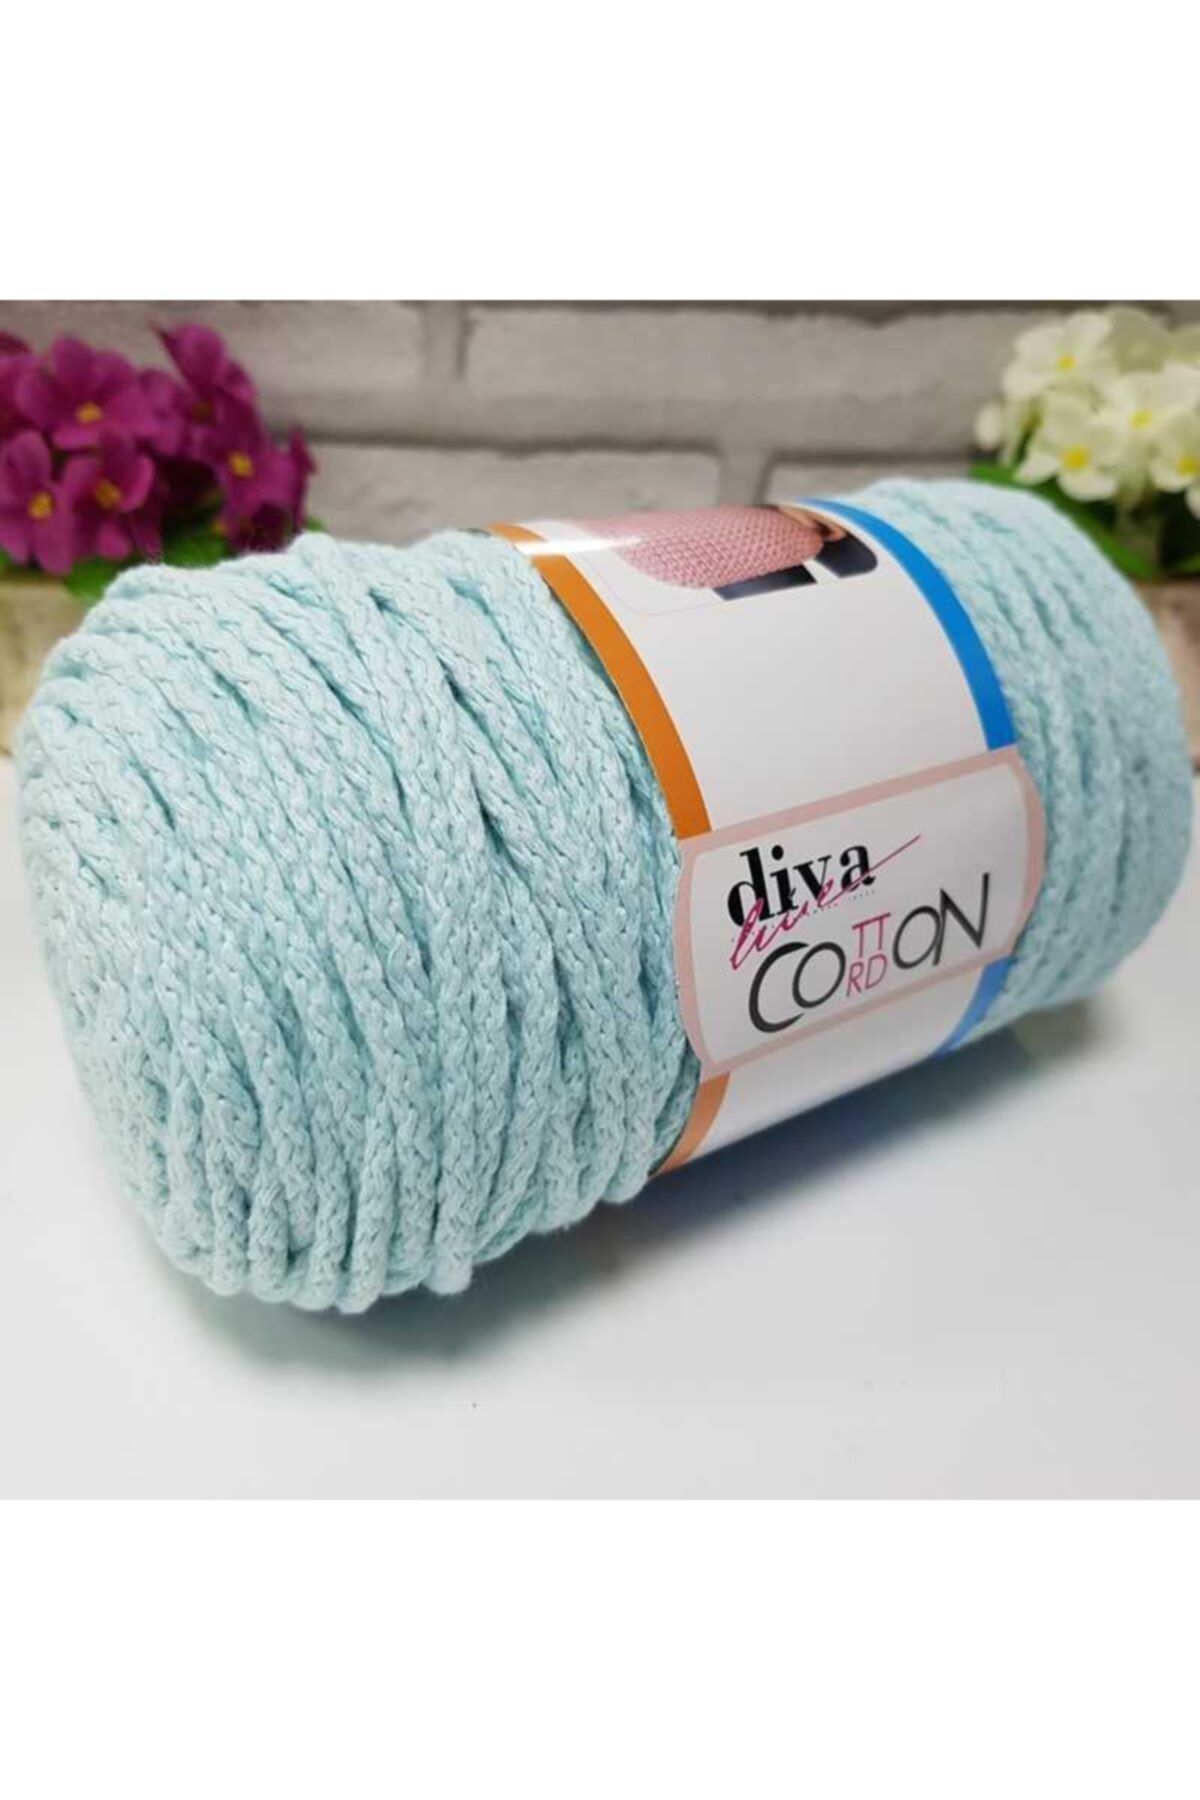 Diva İplik Diva Cotton Cordon Kordon Ipi 1001 Soft Mint